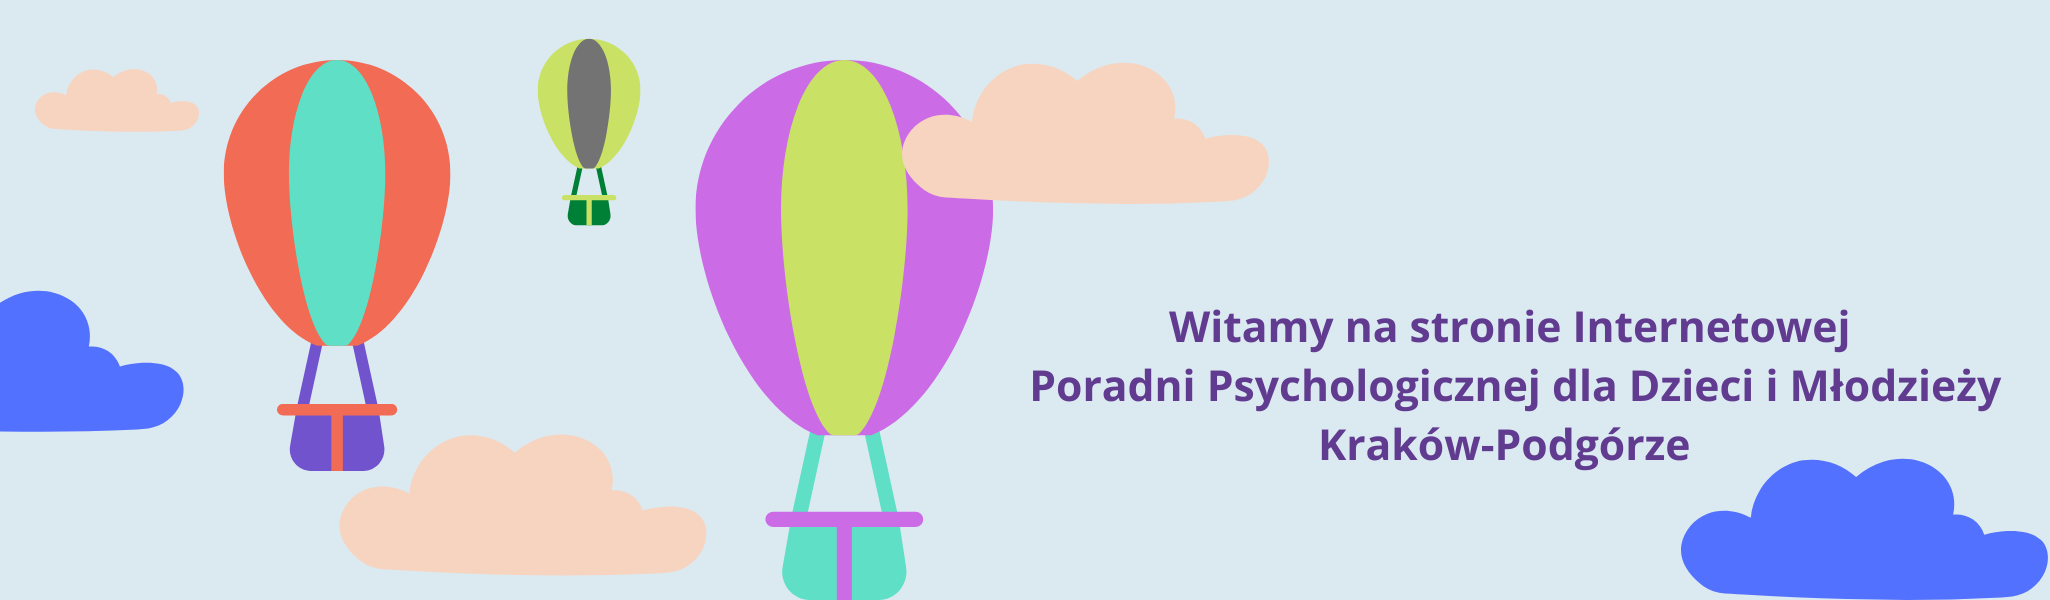 Witamy na stronie Internetowej Poradni Psychologicznej dla Dzieci i Młodzieży Kraków-Podgórze (4)